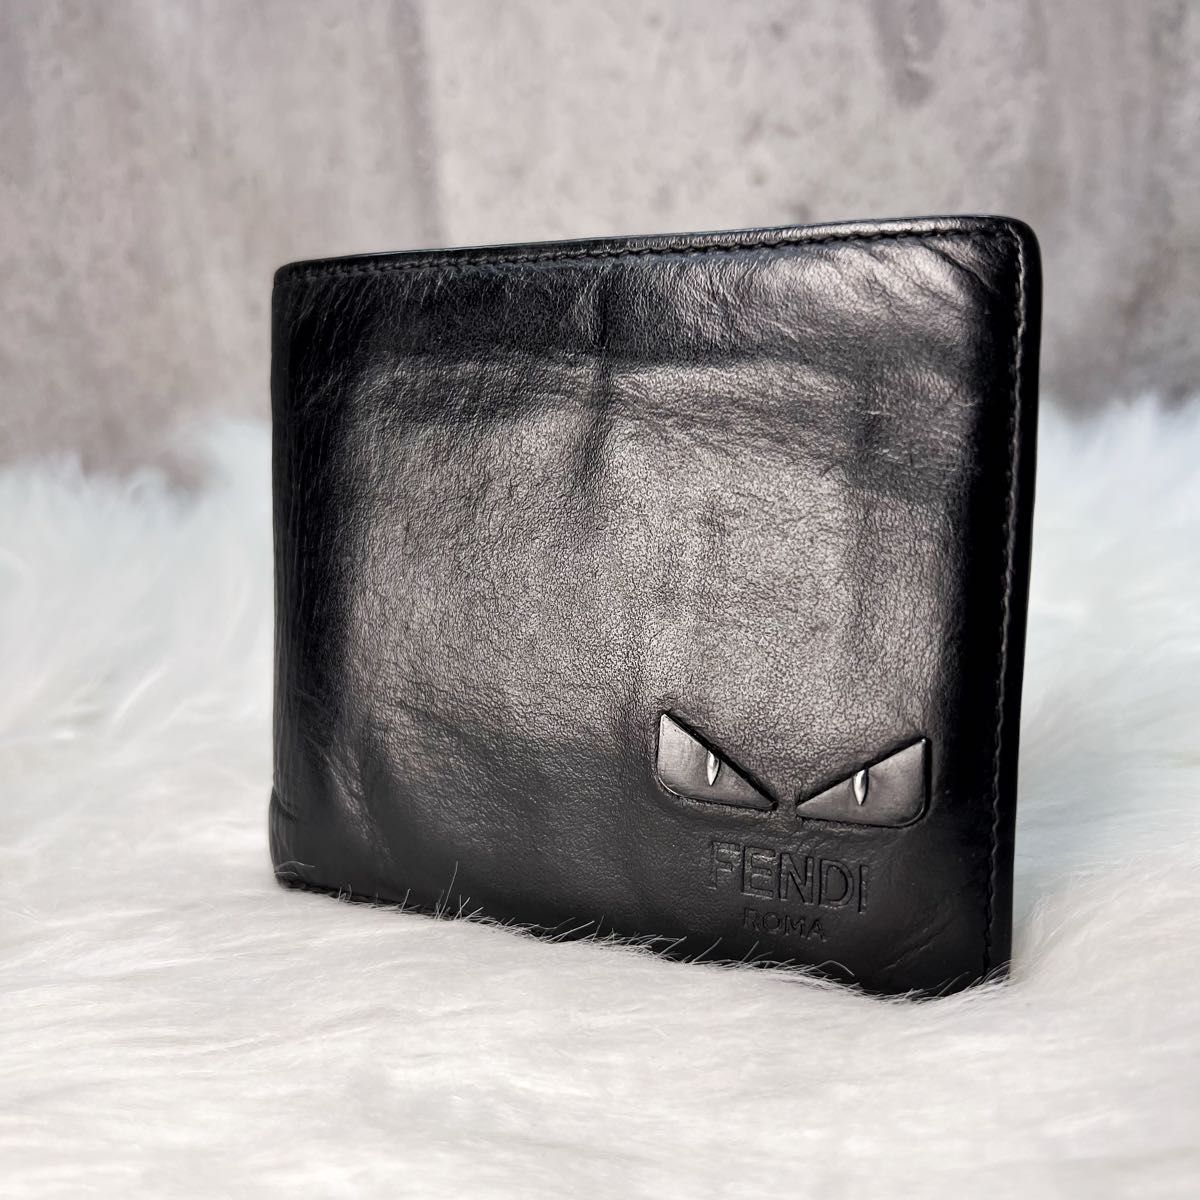 話題の行列 【美品】FENDI 財布 二つ折り ブラック FF ウォレット